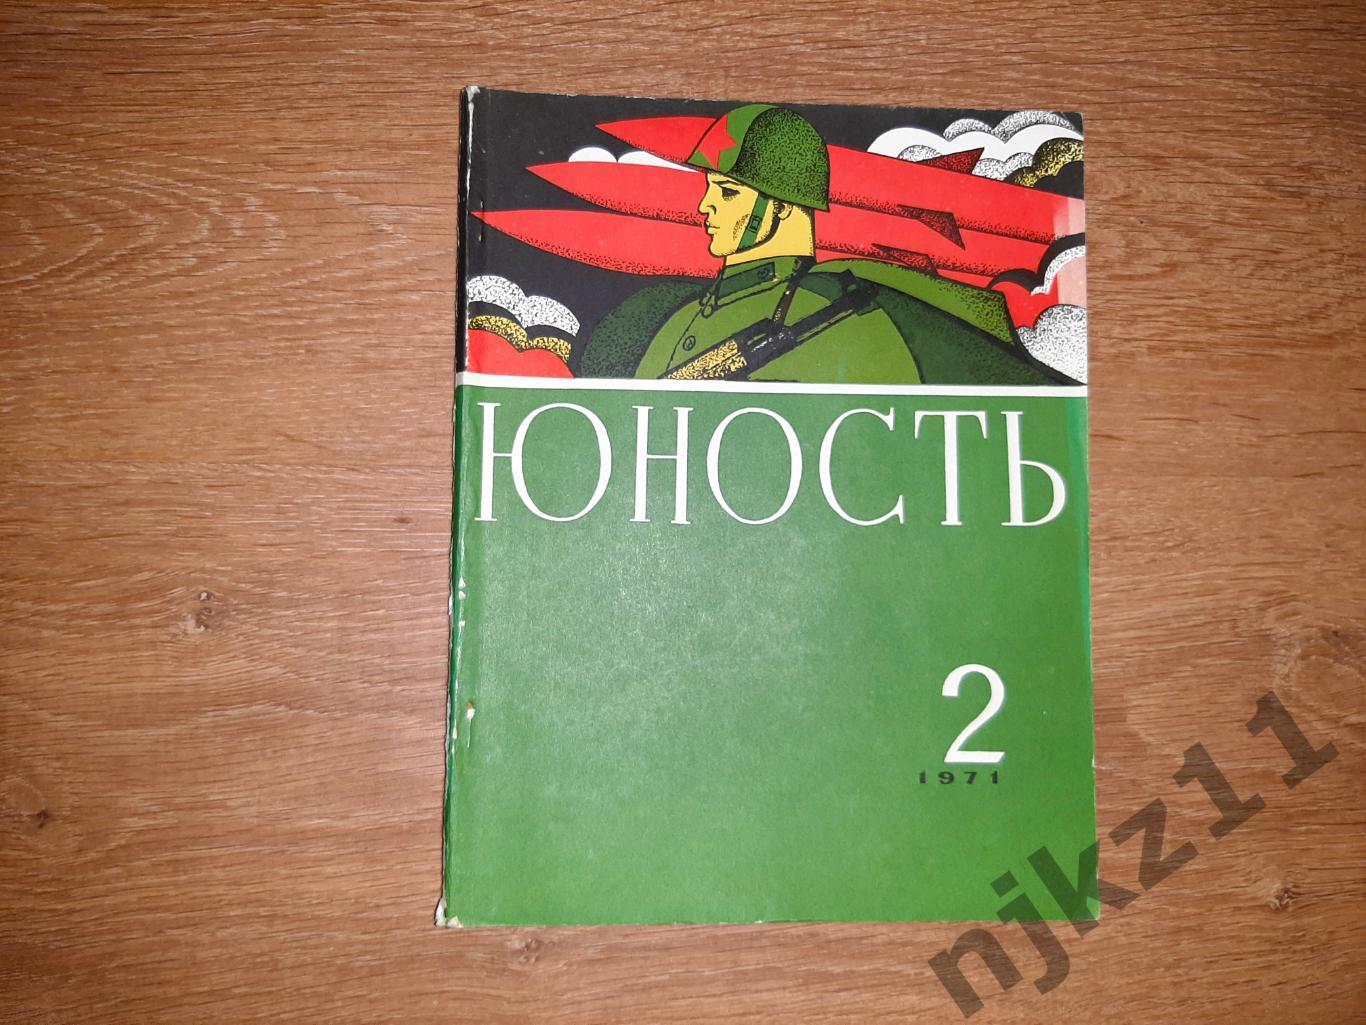 Журнал юность 1971 № 2 Пахомова и Горшков фигурное катание